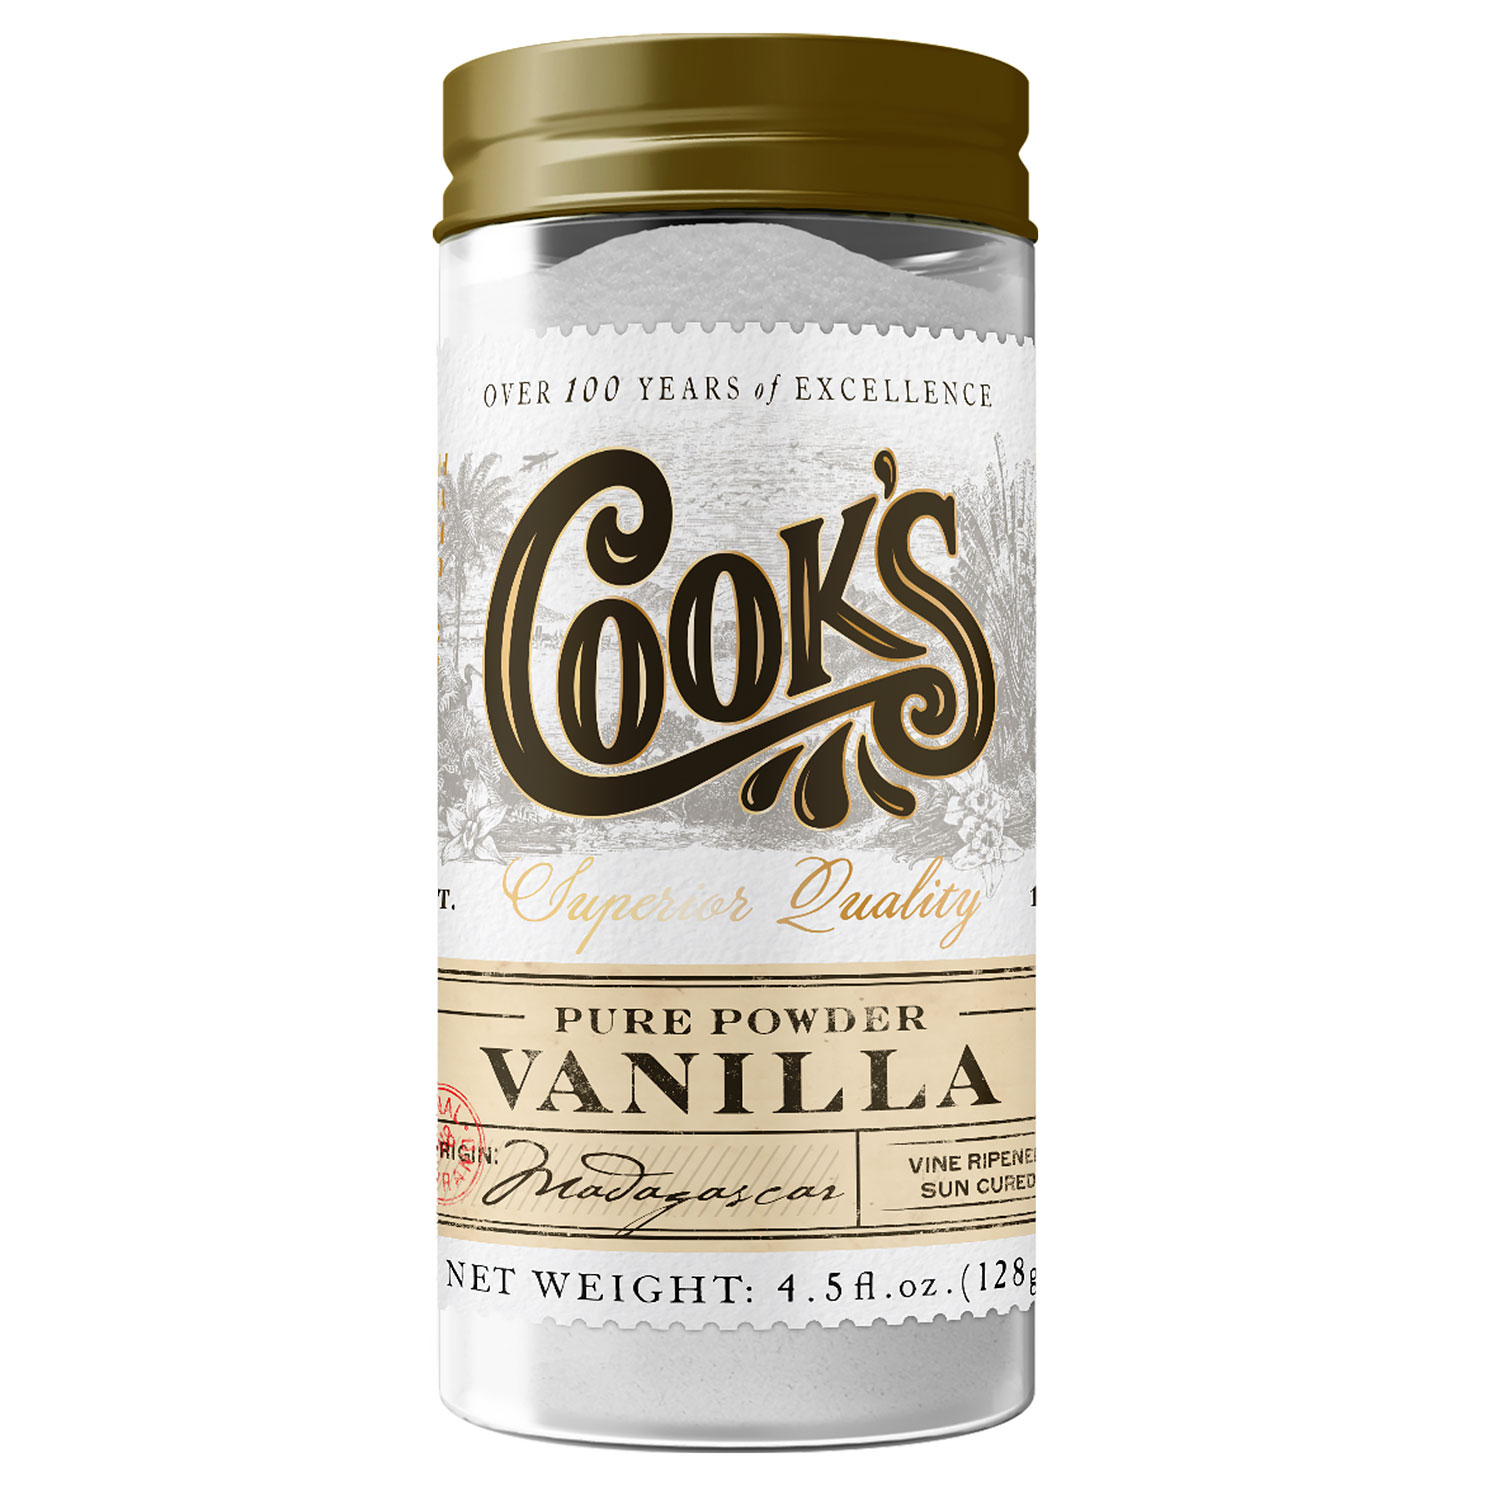 Cook's Pure Vanilla Powder